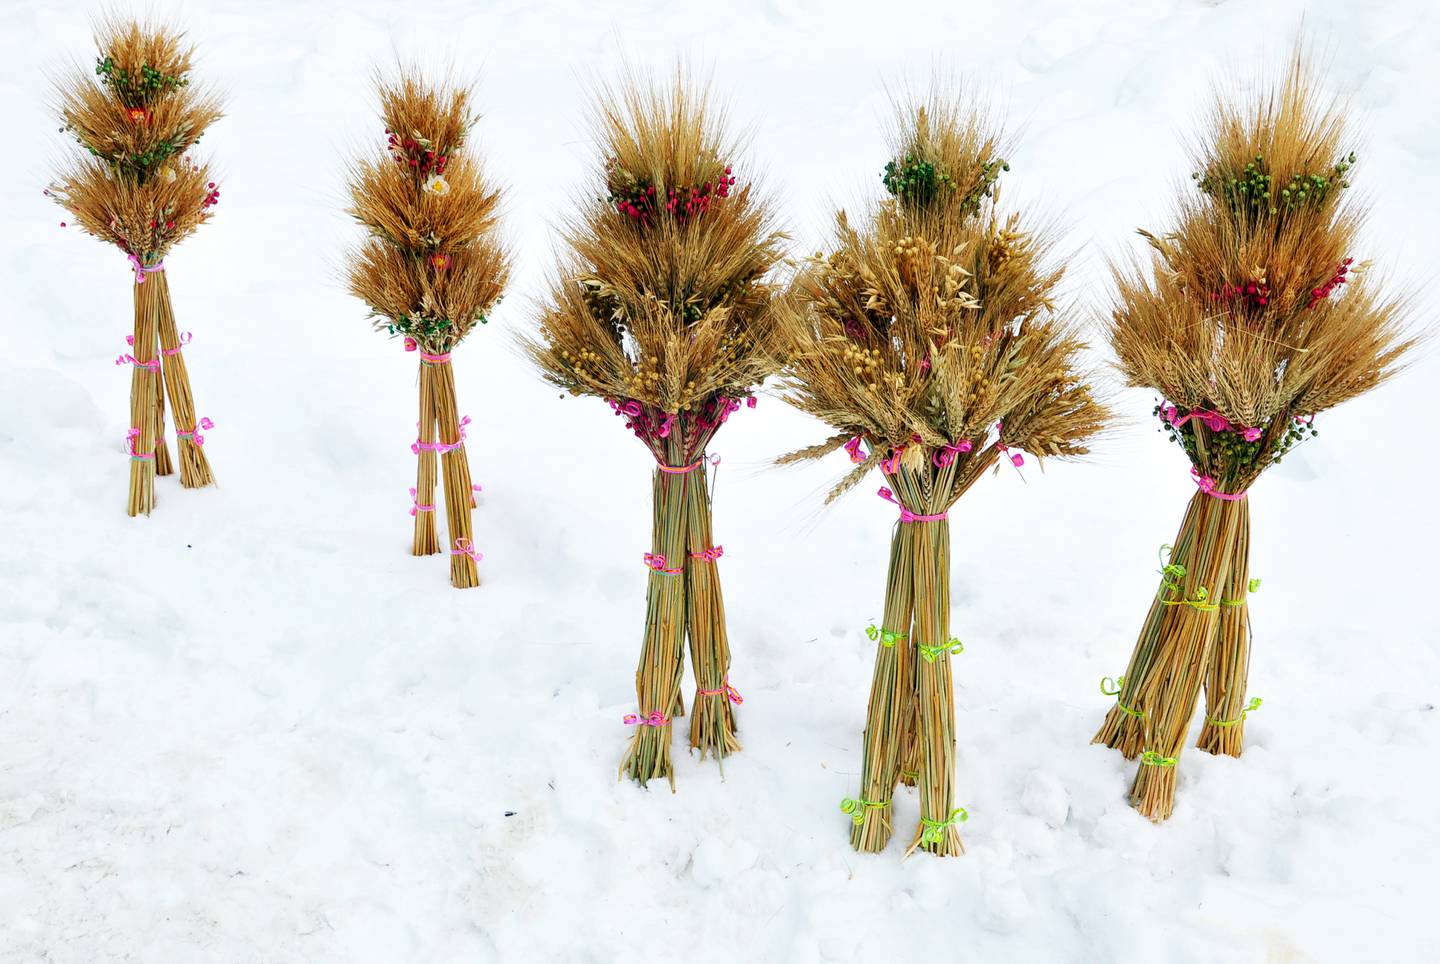 Julepynten didukh symboliserer ønsket om en rik avling for det kommende året. Det sies også at åndene til husstandens forfedre tar bolig i pynten i løpet av julen.